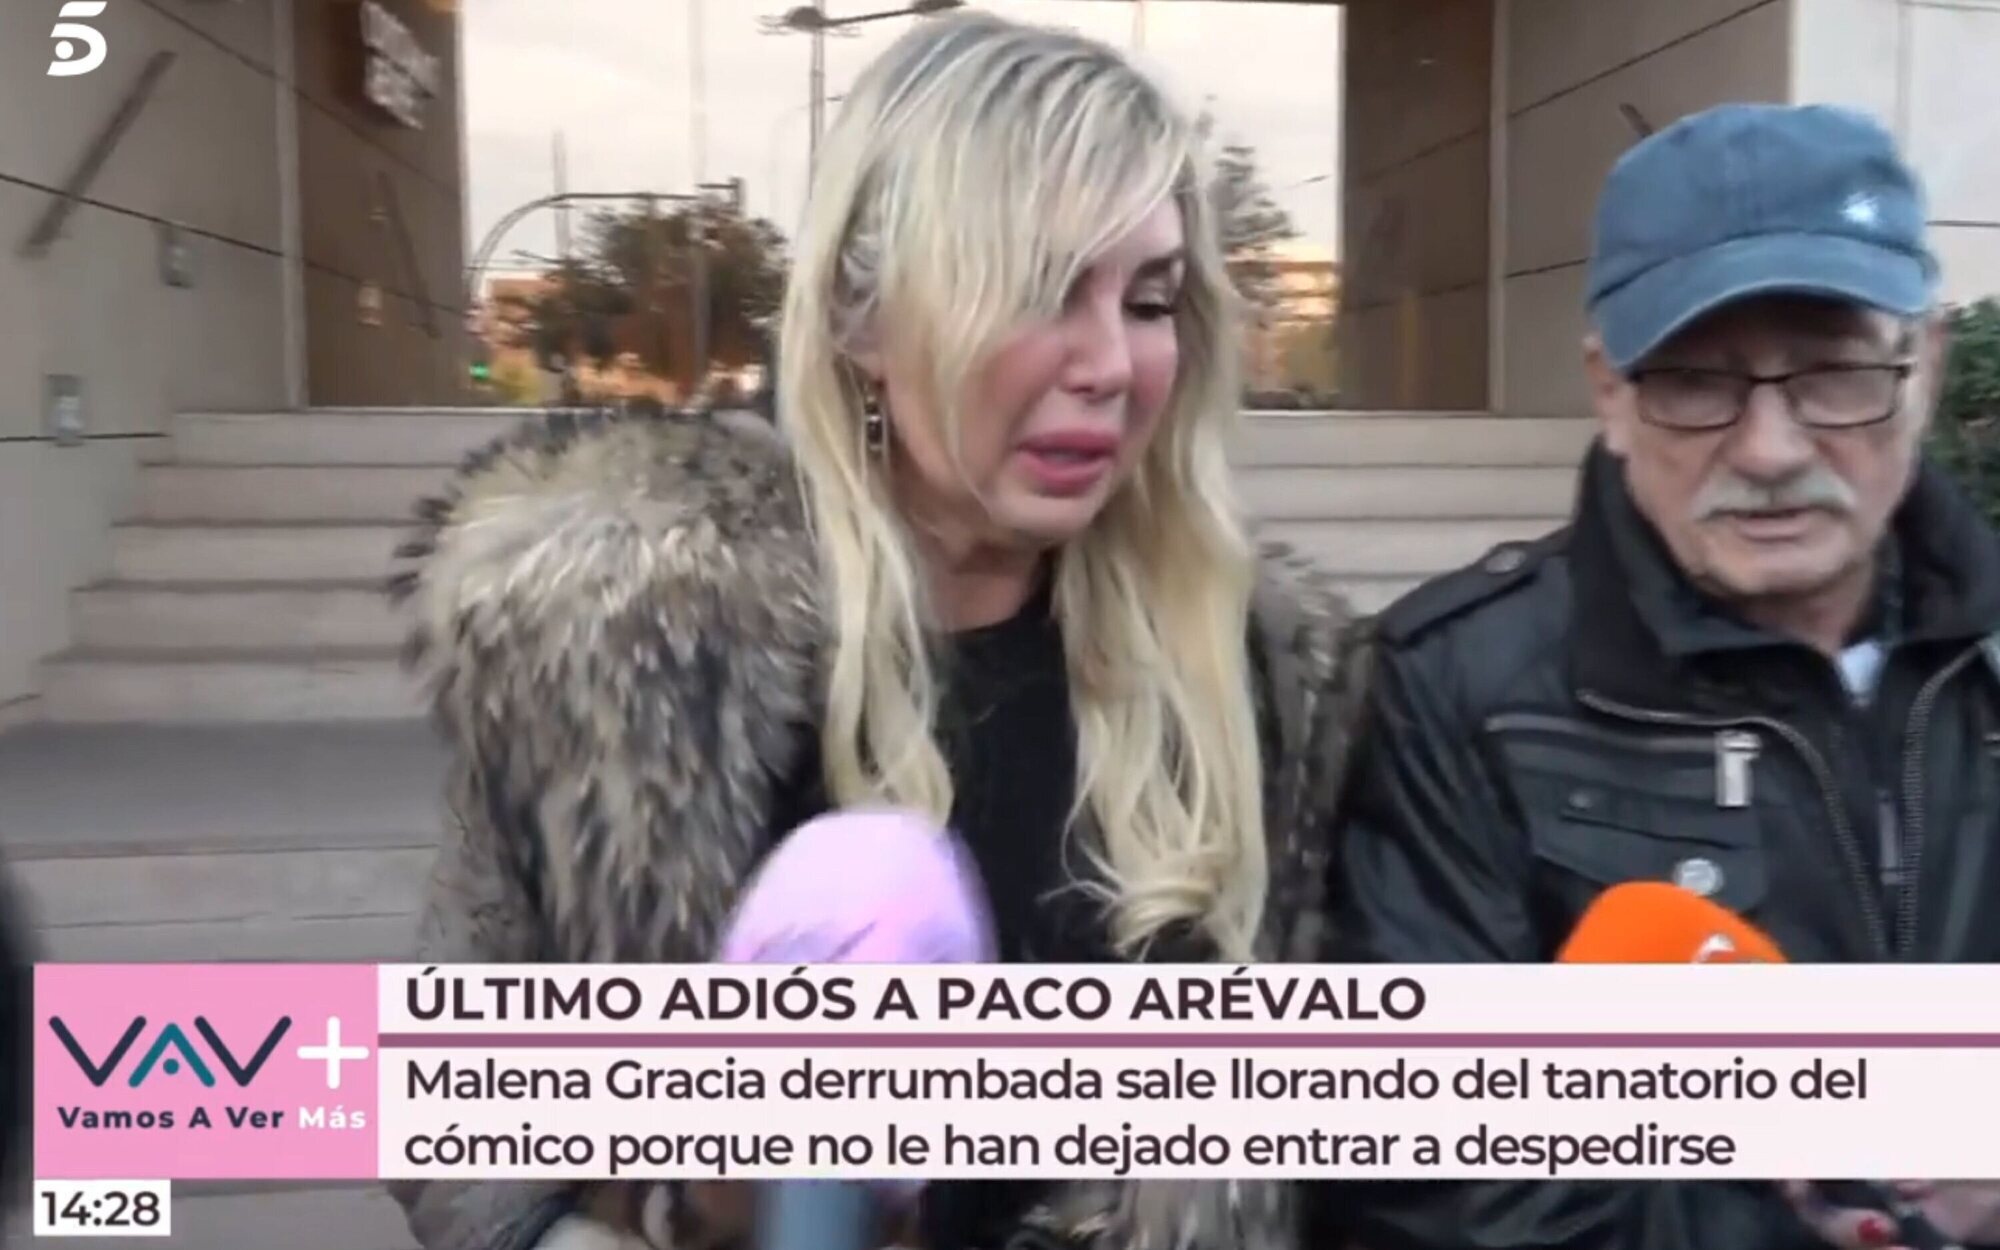 Malena Gracia, expulsada por la familia de Arévalo del tanatorio: "Ha pasado algo muy feo"